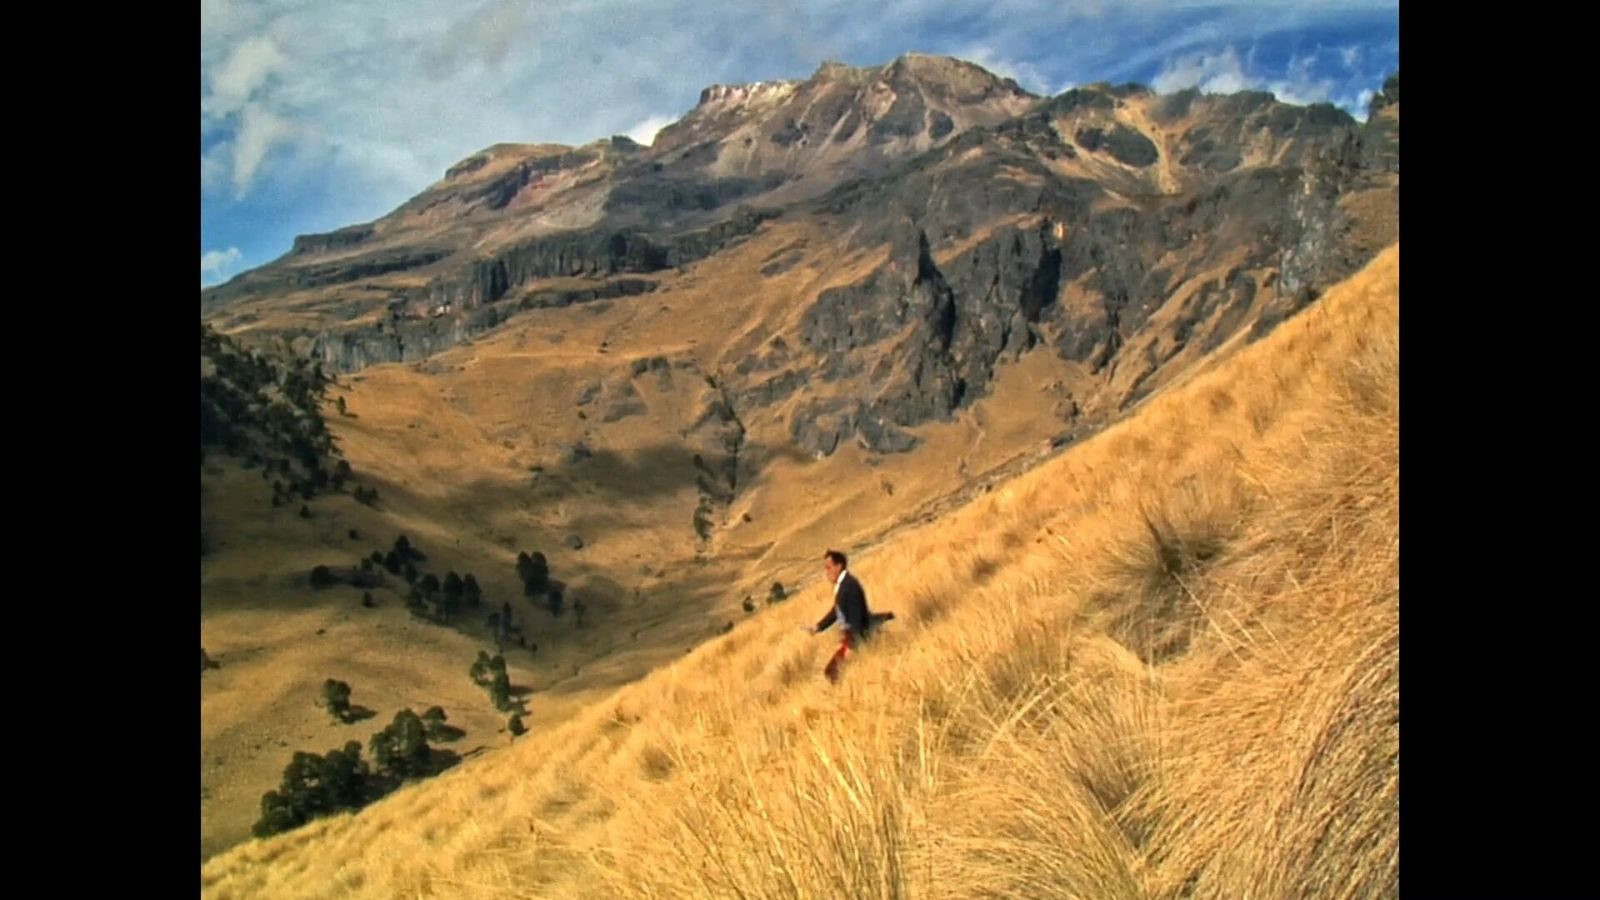 Cena do filme Toda Luz Que Podemos Ver exibe uma paisagem com vegetação rasteira e seca, montanhas ao fundo e o céu azul com poucas nuvens. Ao centro da imagem aparece um homem de roupa preta andando pela vegetação baixa.